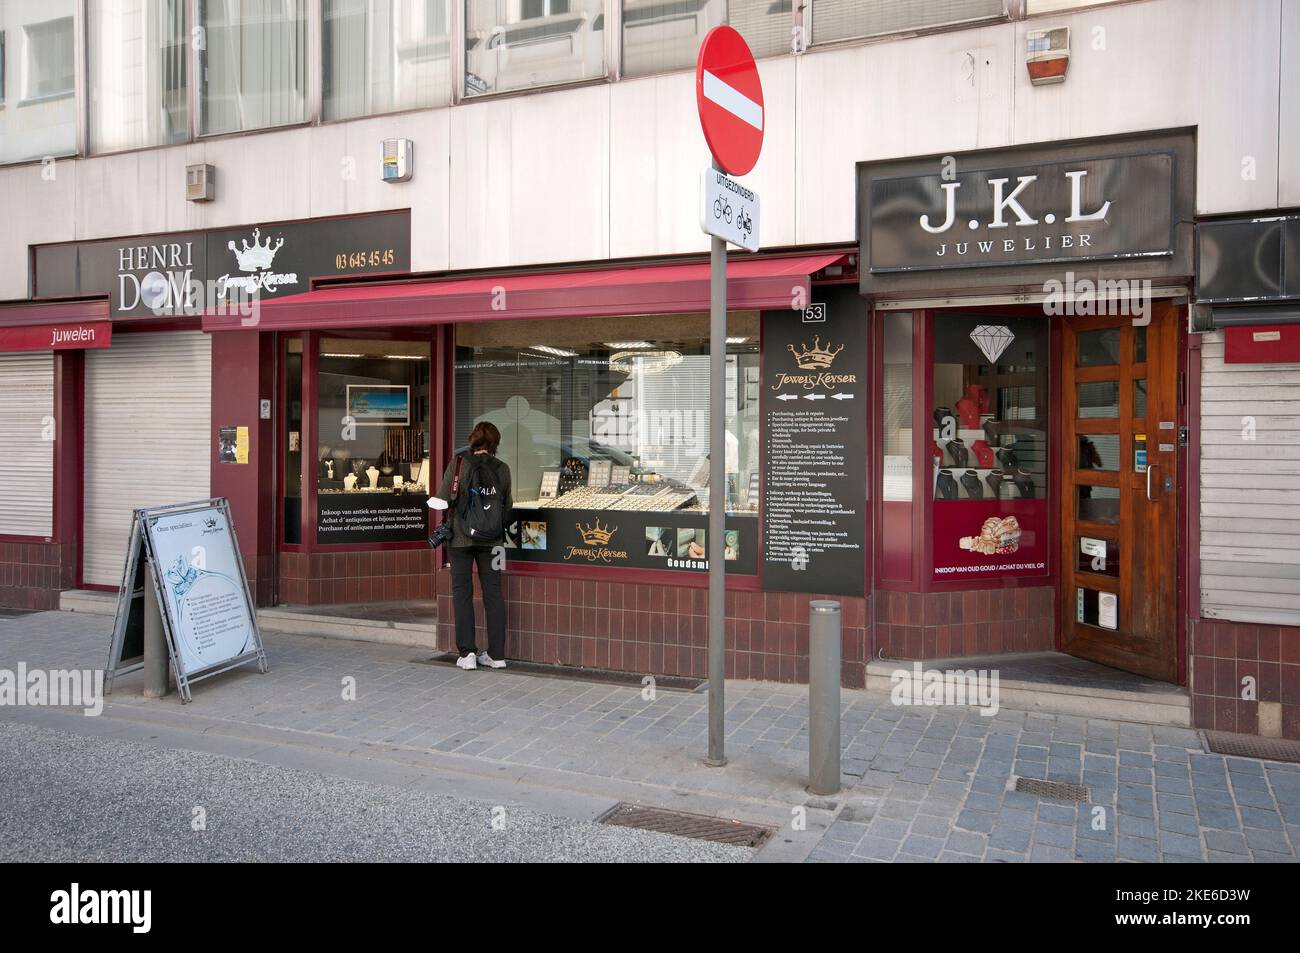 Jewel's Keyser, jewellery store in Antwerp (Flanders), Belgium Stock Photo